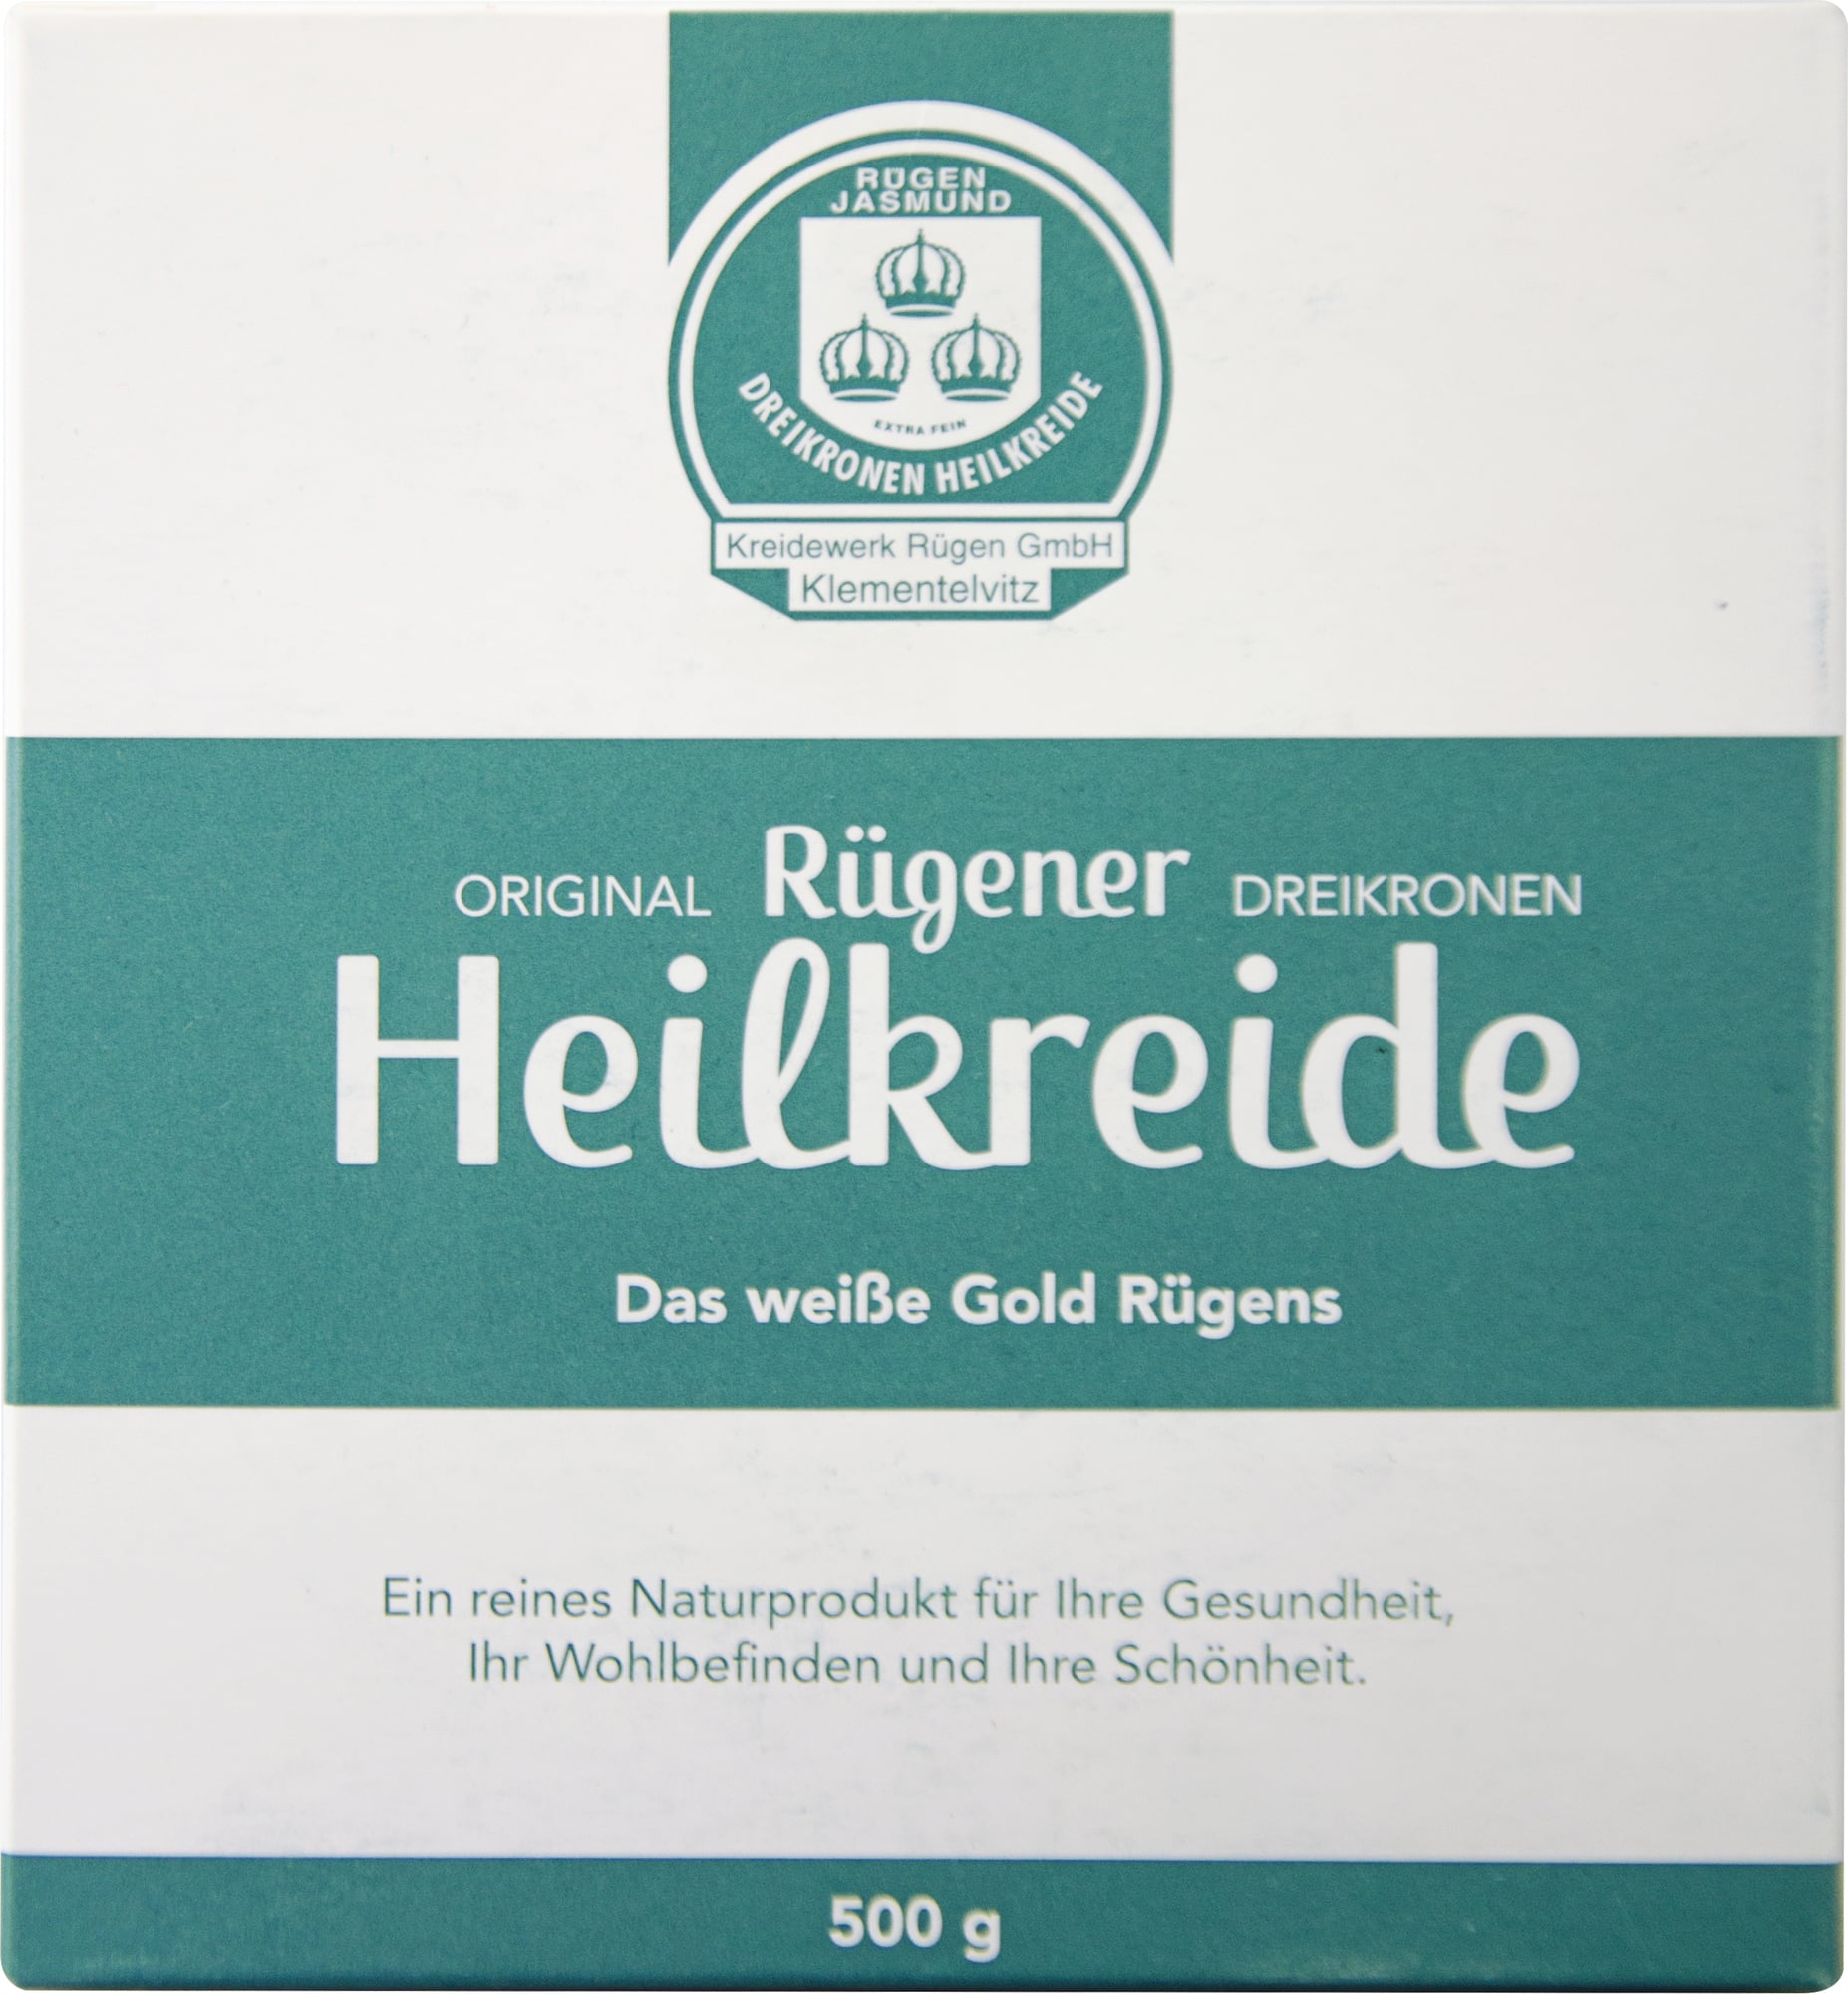 CMD Naturkosmetik Original Rügener Heilkreide - 500 g